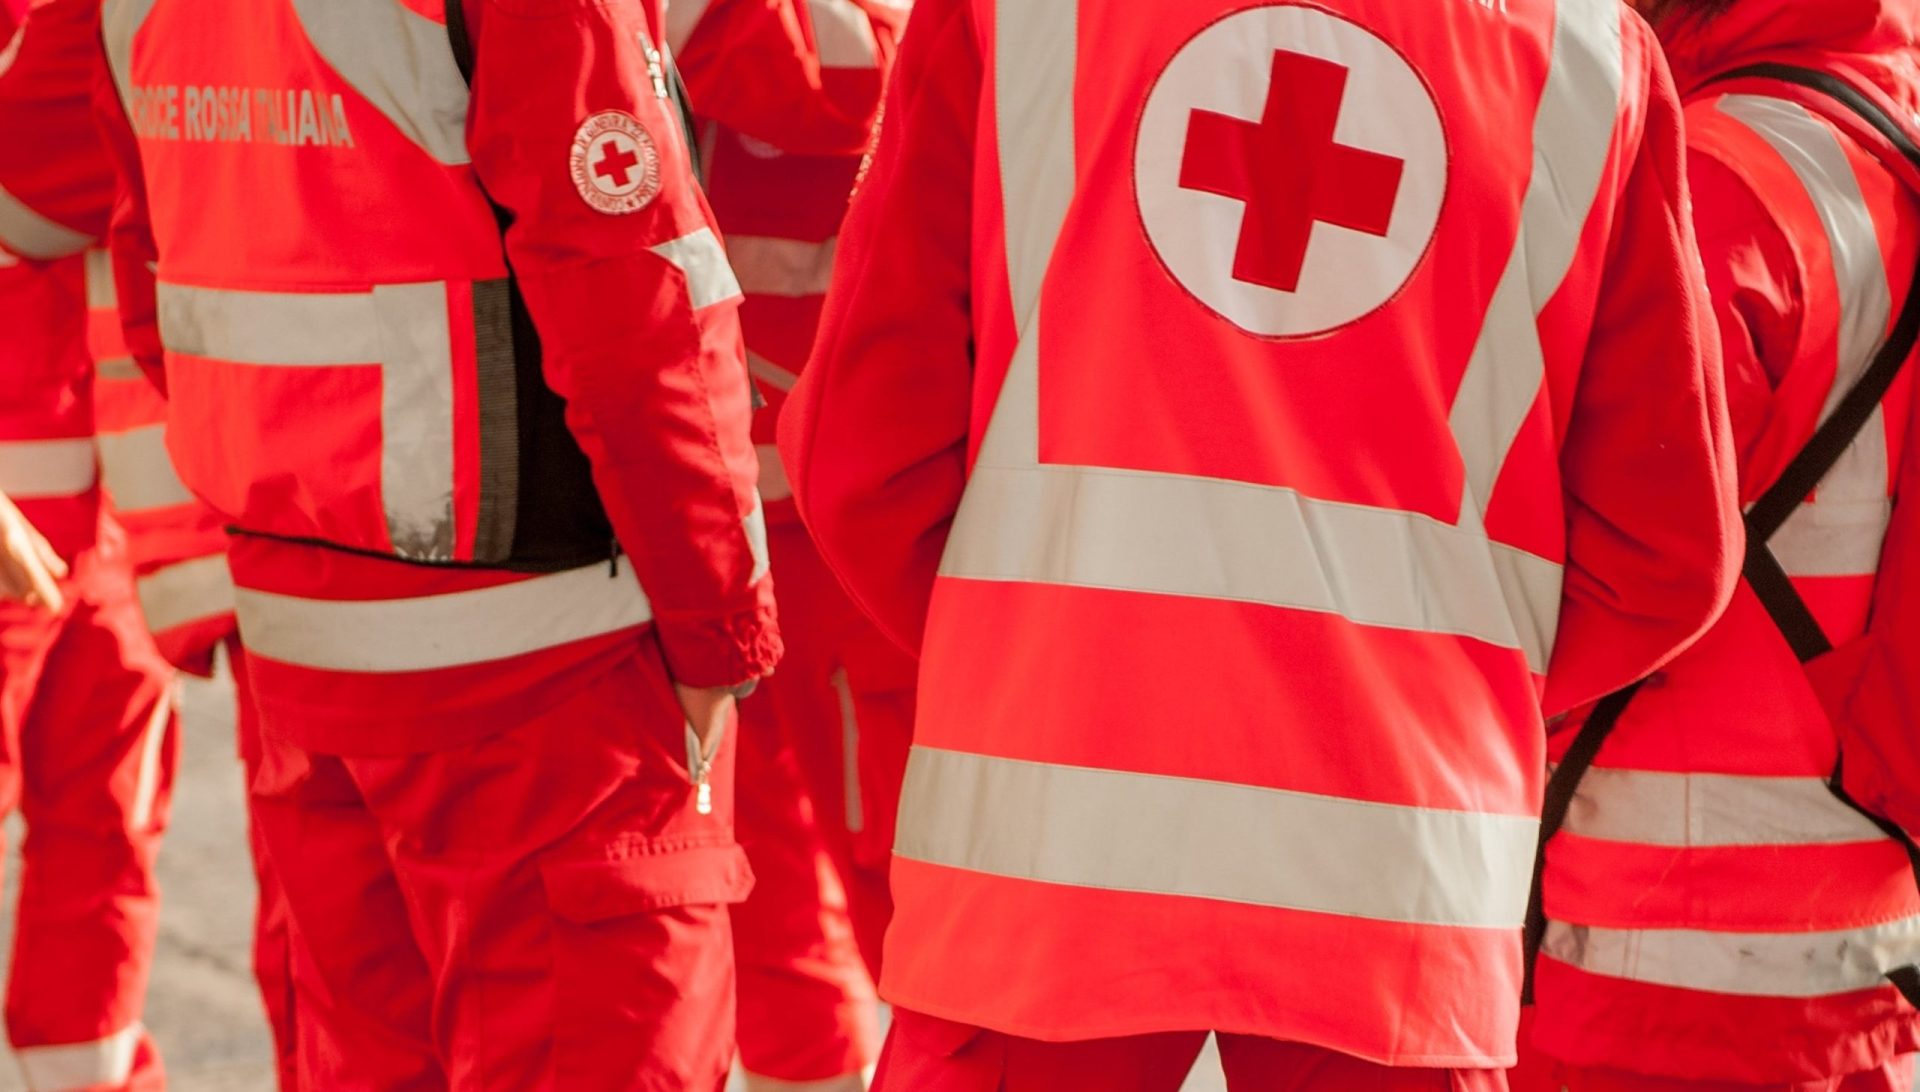 Cruz Vermelha Portuguesa defende que se devem &#8220;apurar responsabilidades&#8221;